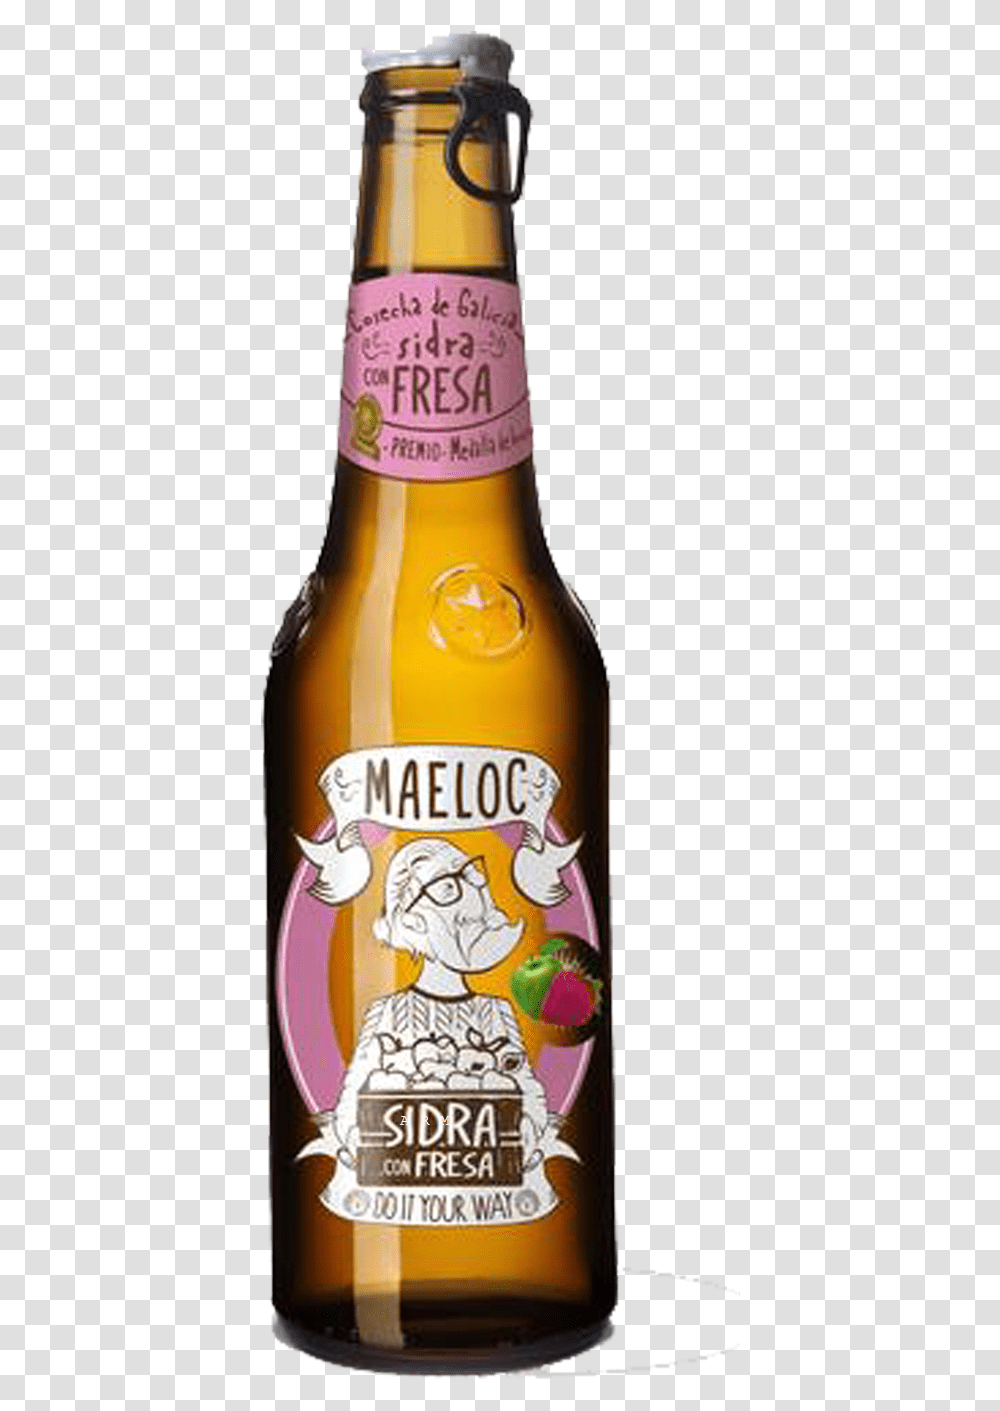 Maeloc Cider, Beverage, Drink, Alcohol, Bottle Transparent Png